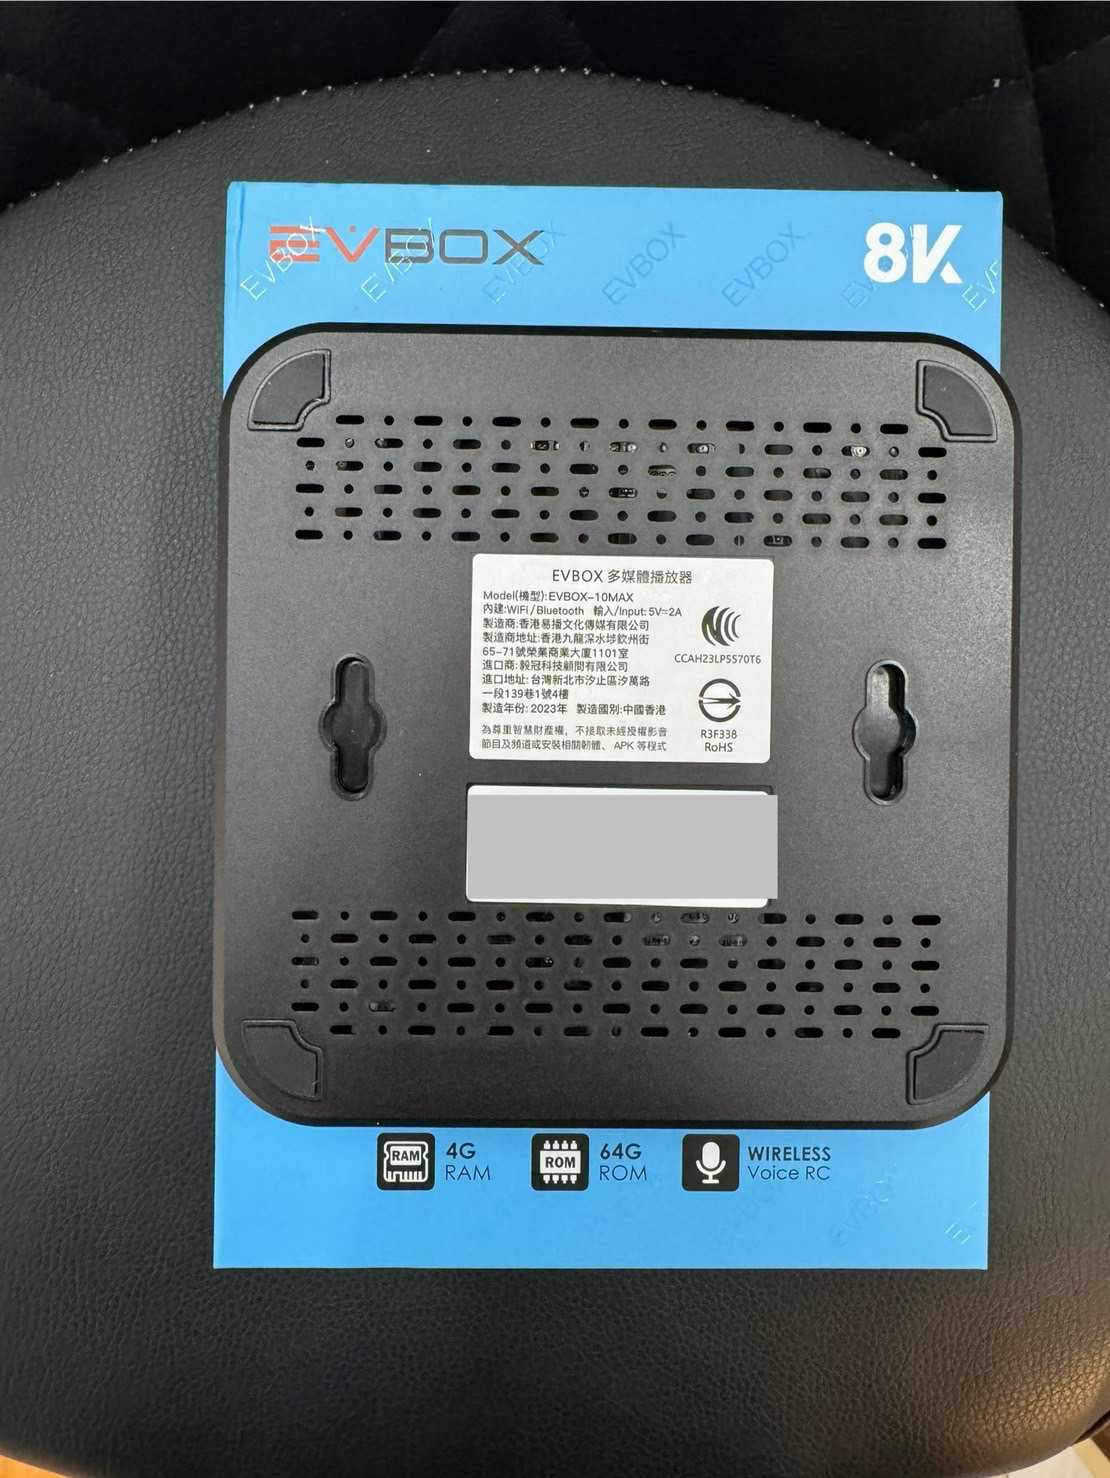 【艾爾巴二手】 EVBOX 10MAX 易播盒子 4G+64G 純淨版#保固中#二手電視盒#大里店7C217